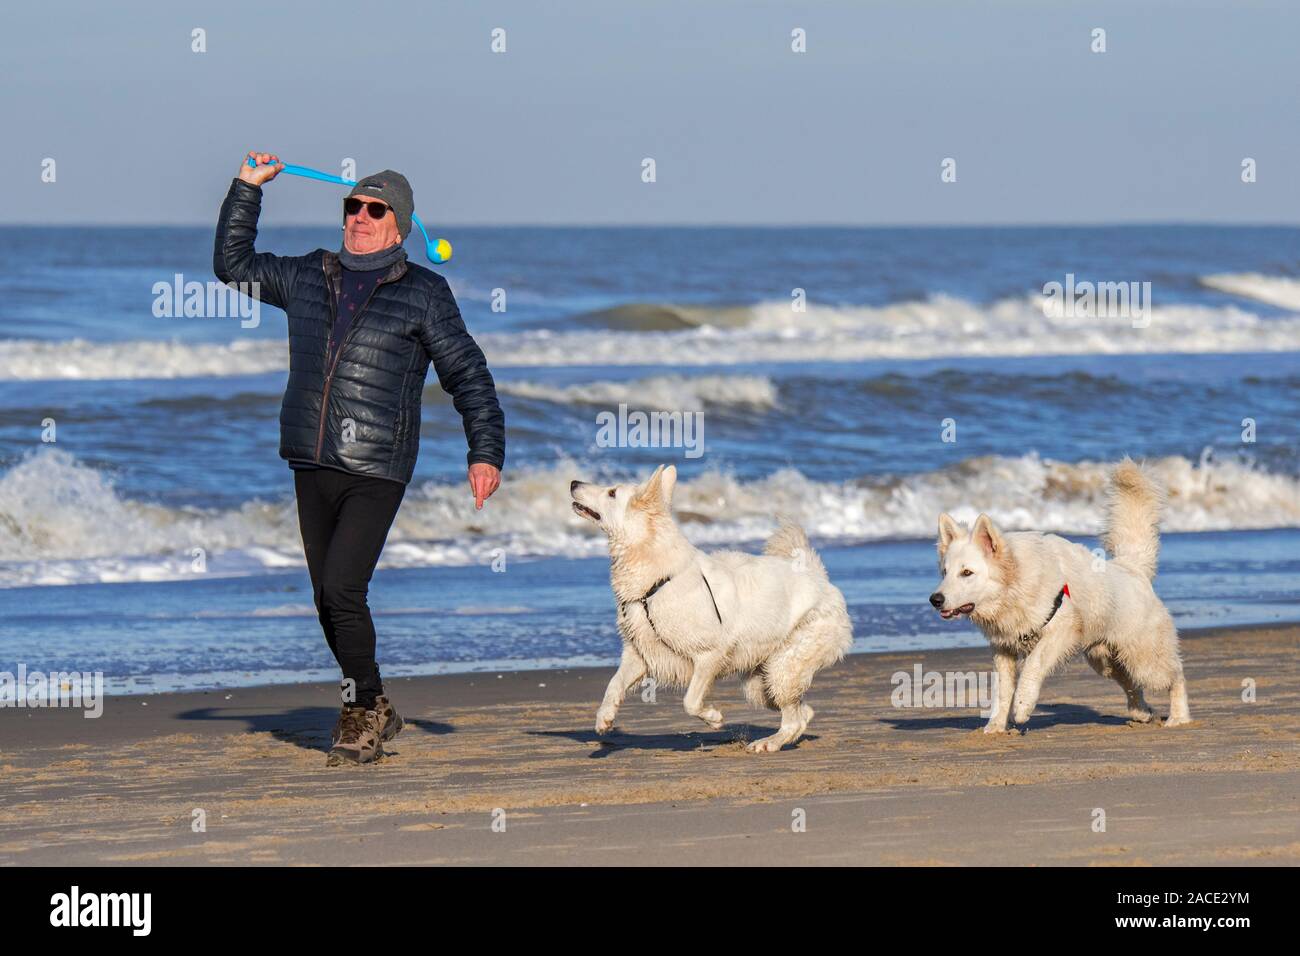 Proprietario del cane con palla da tennis launcher fetch giocando sulla spiaggia di sabbia con due scatenato Berger Blanc Suisse cani / bianco Svizzero di pastori Foto Stock